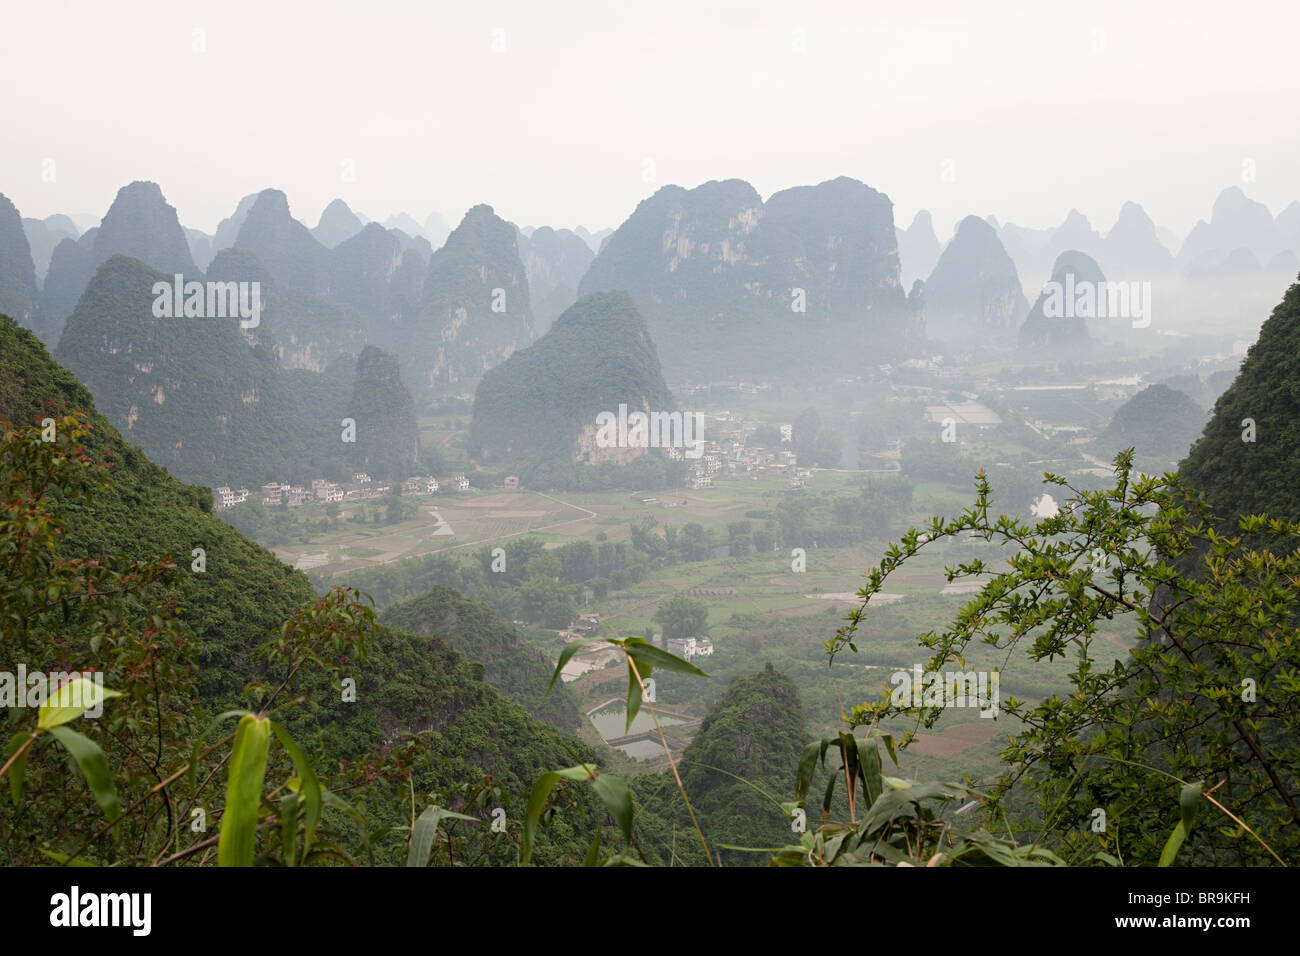 China, guangxi province, yangshuo, moon hill Stock Photo - Alamy